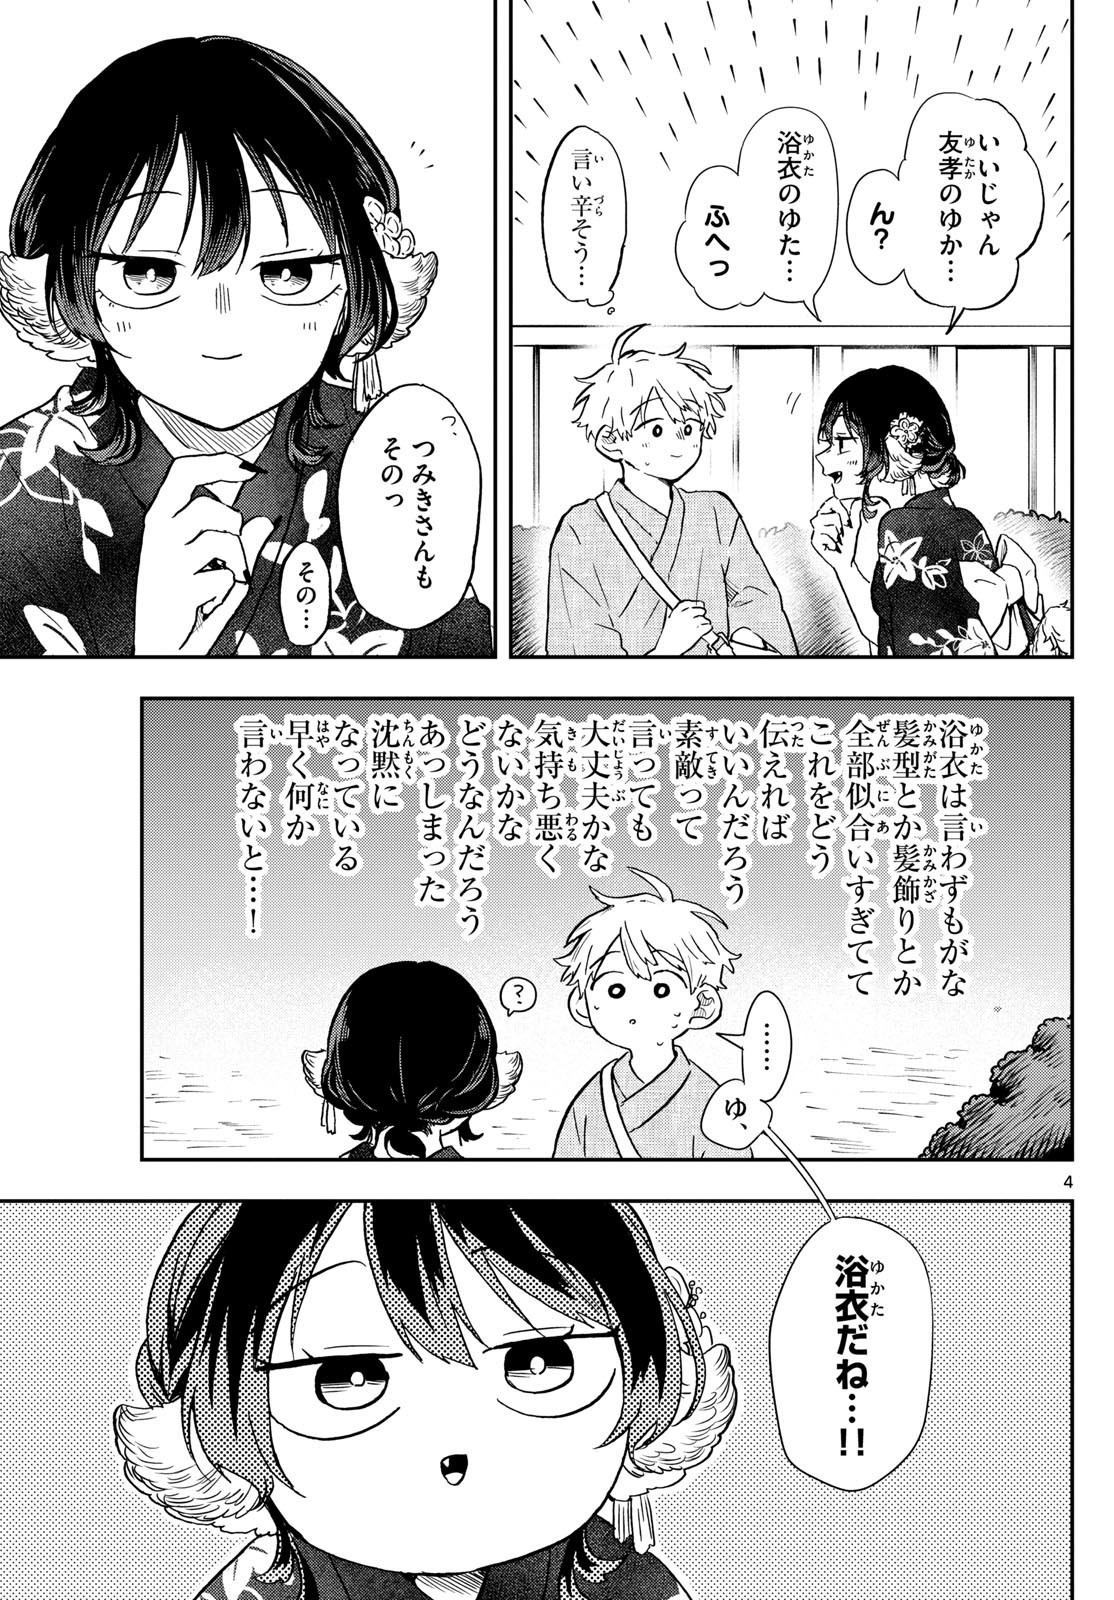 Omori Tsumiki to Kinichijou. - Chapter 24 - Page 4